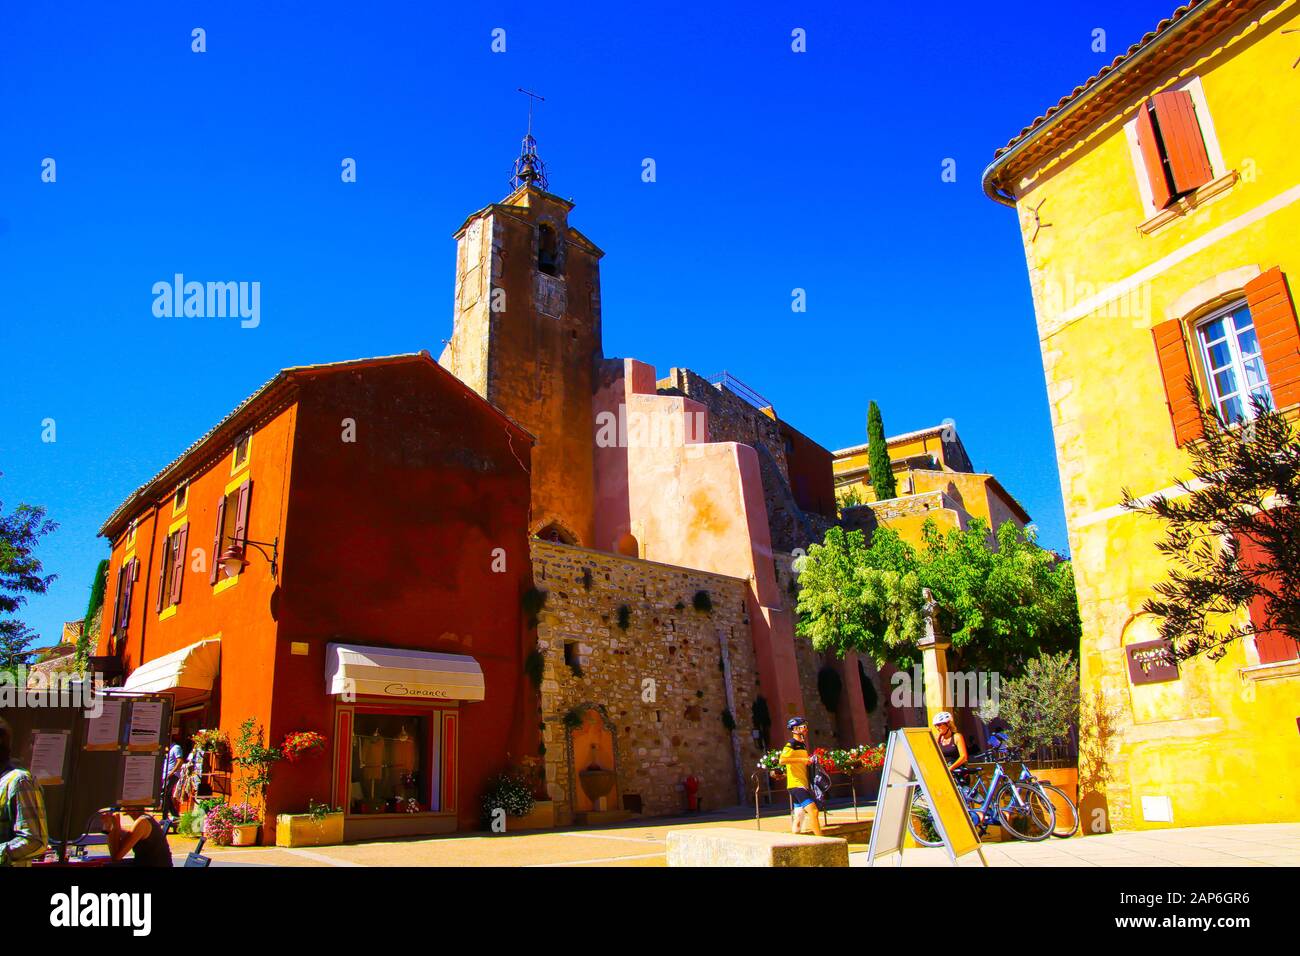 Roussillon En Provence, France - 2 Octobre. 2019: Vue au-delà de la maison jaune lumineuse méditerranéenne sur la tour de l'église d'ocre contre le ciel bleu Banque D'Images